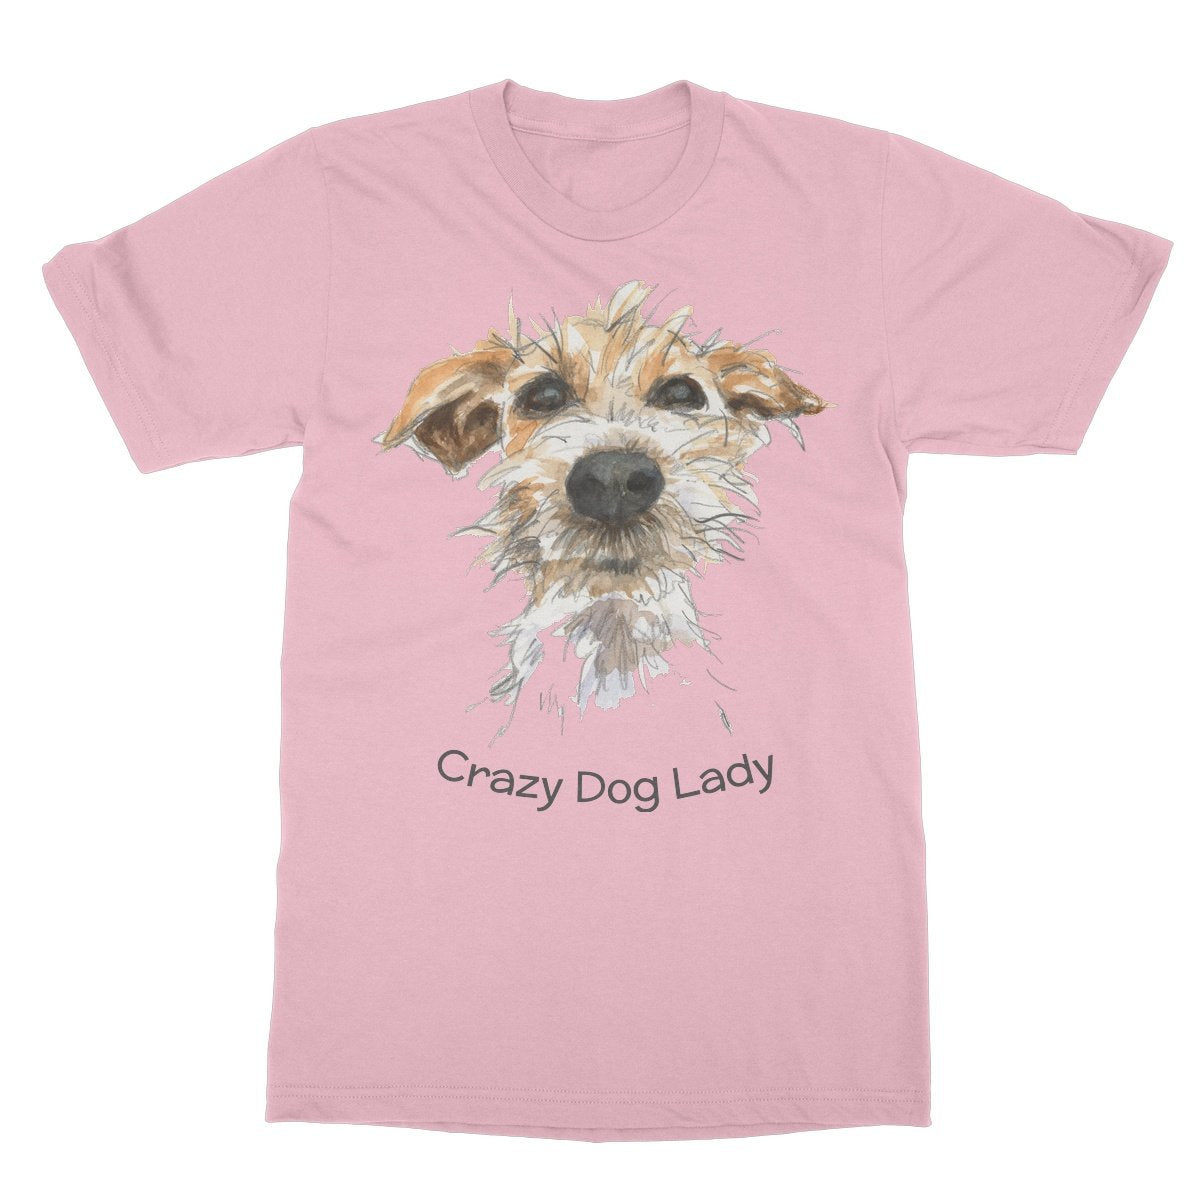 Unisex Softstyle T-Shirt - 'Crazy Dog Lady'